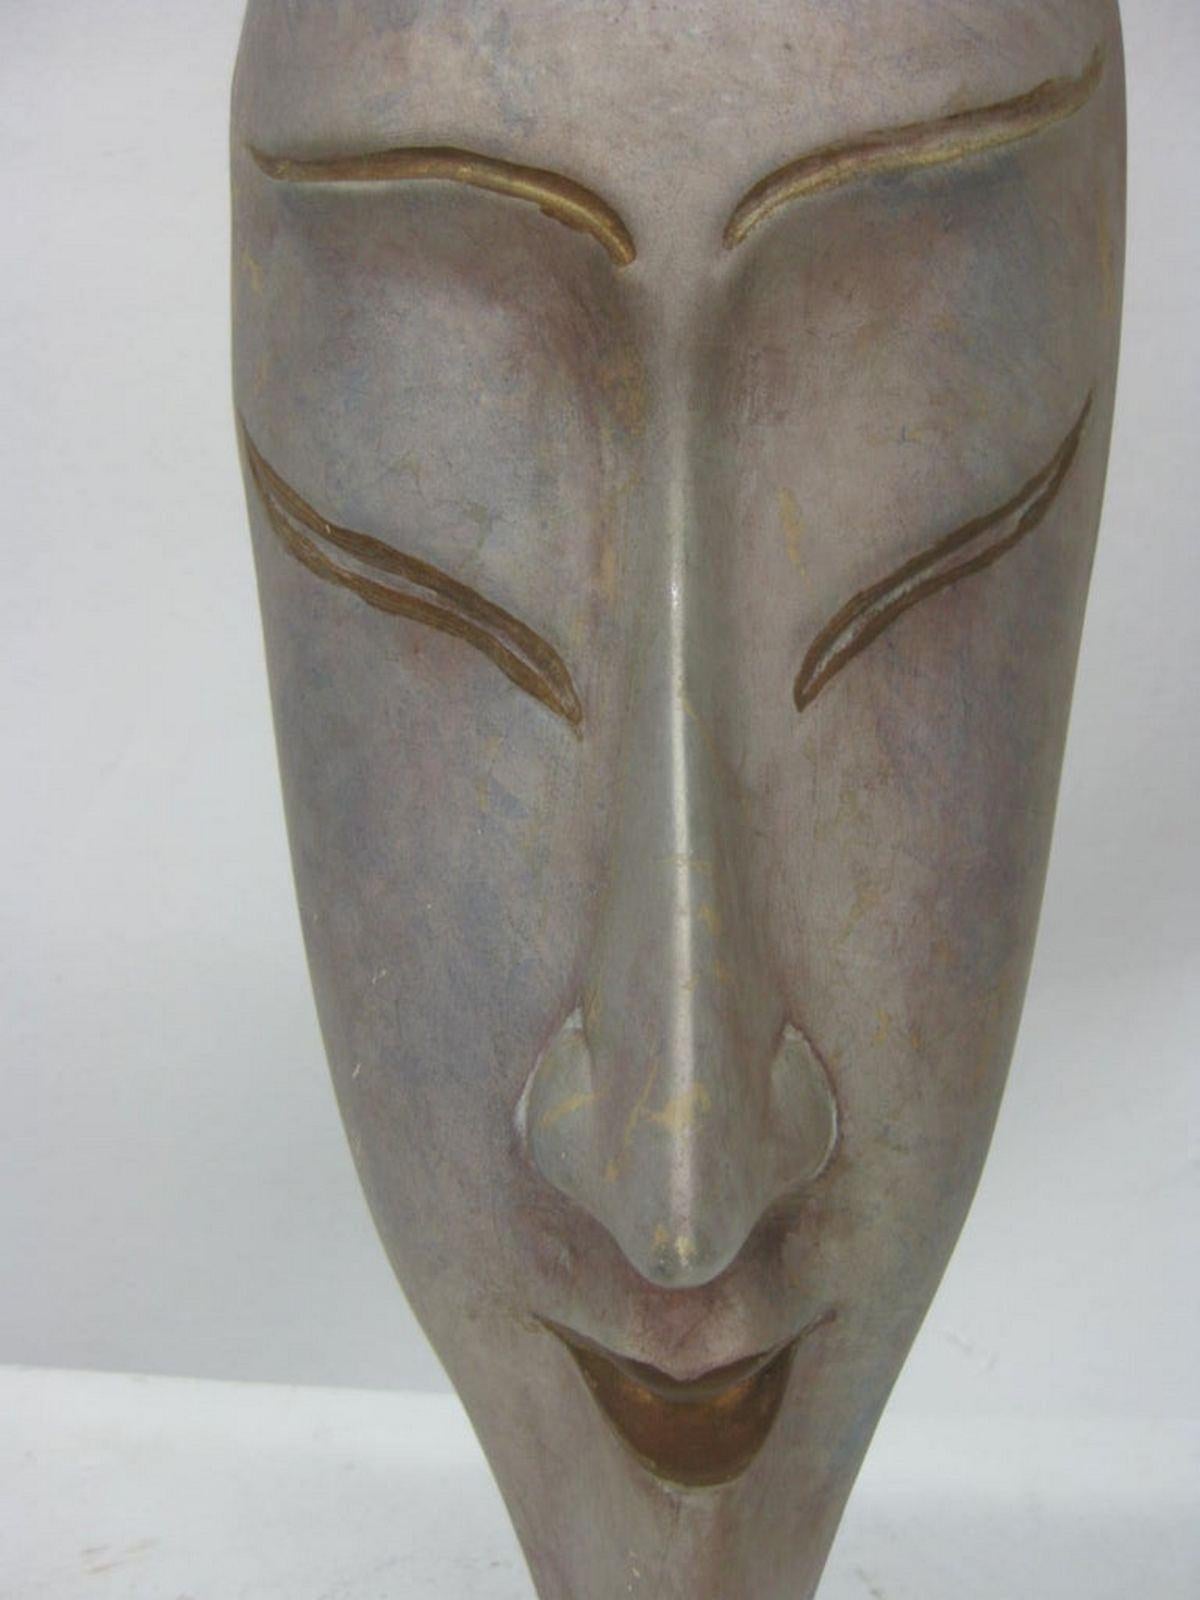 Diese handbemalte Maske zeigt ein langes Frauengesicht. Goldene Akzente, die Lippen und Augen betonen, erinnern an die japanische Kultur.
Sie ruht auf einem klaren, in Lucite gefassten Sockel.